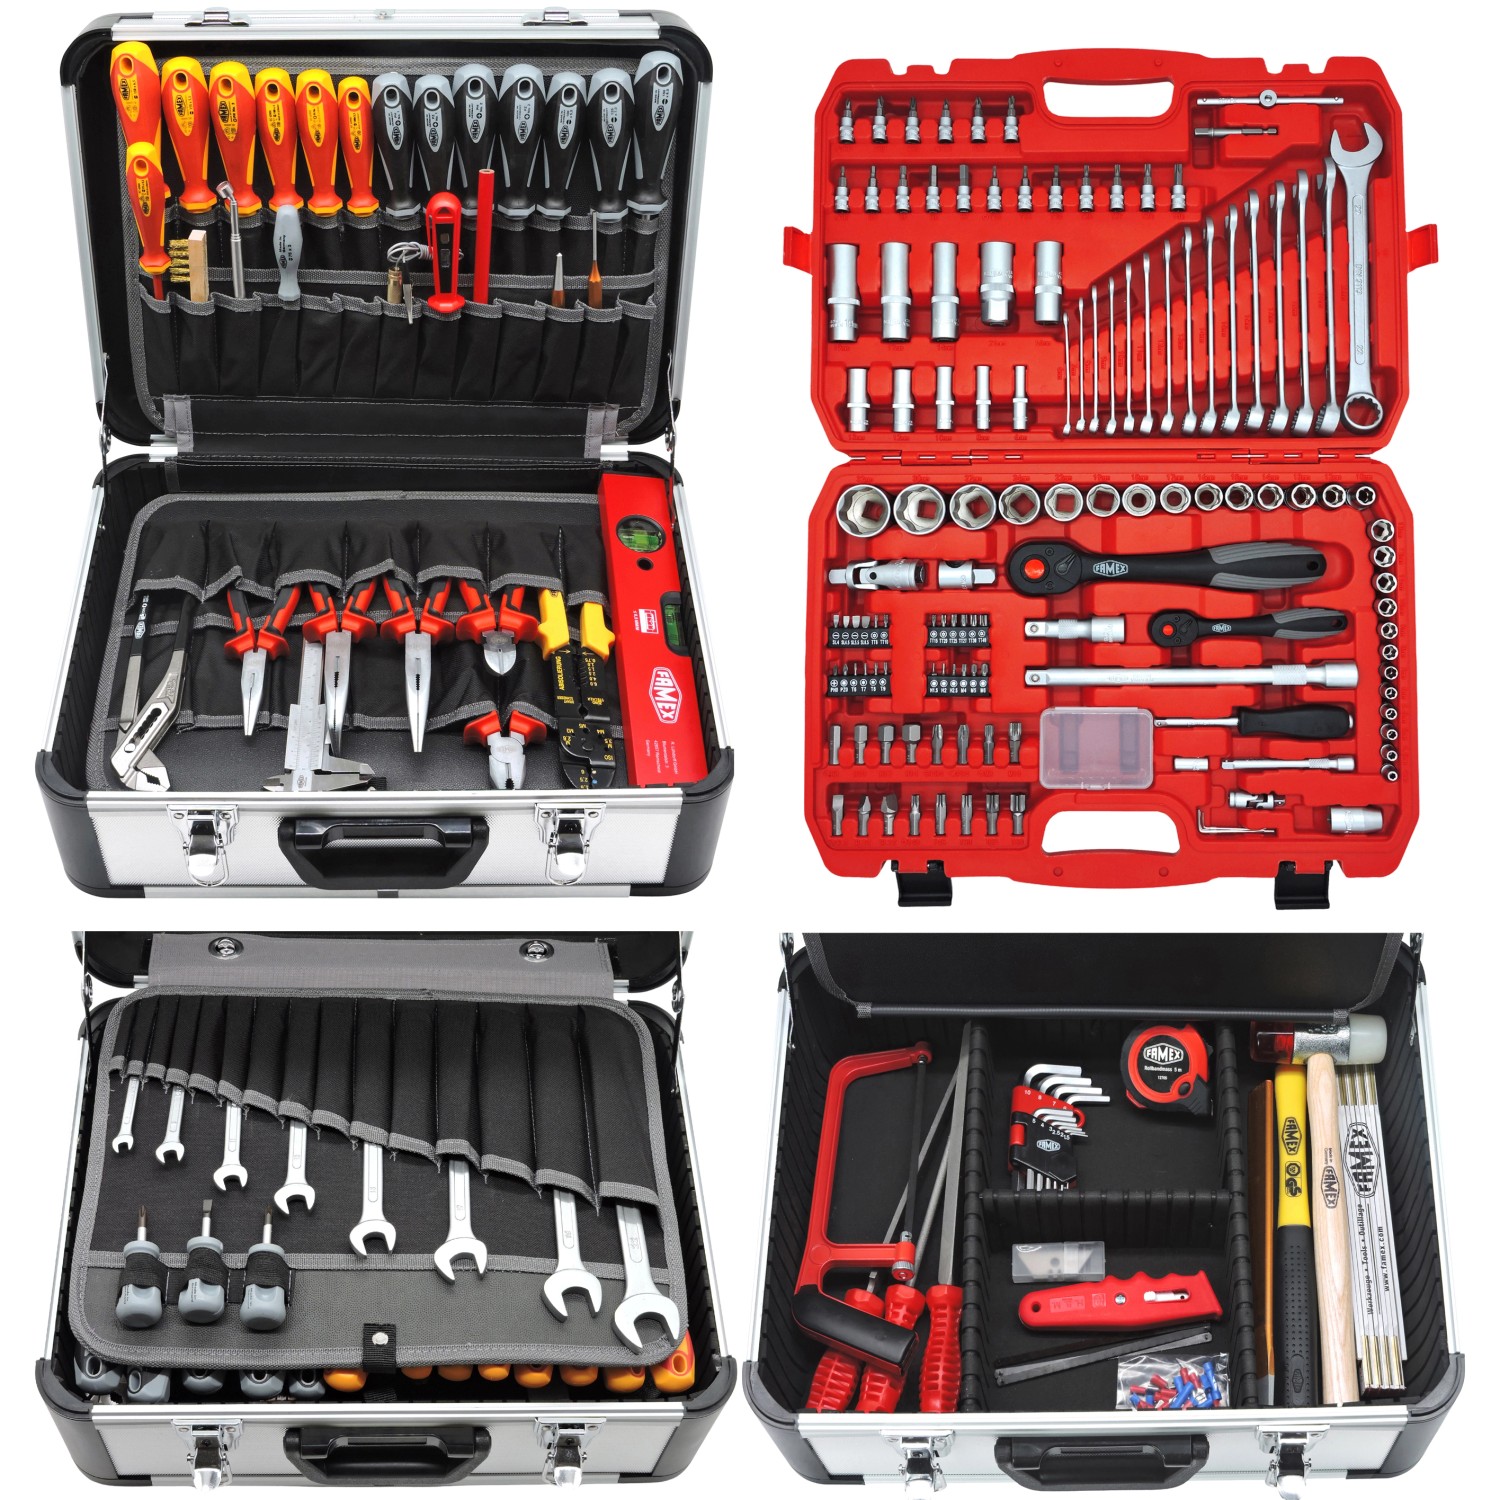 Famex Werkzeugkoffer 419-43 Professional 275-teilig mit Werkzeugset Gefüllt günstig online kaufen